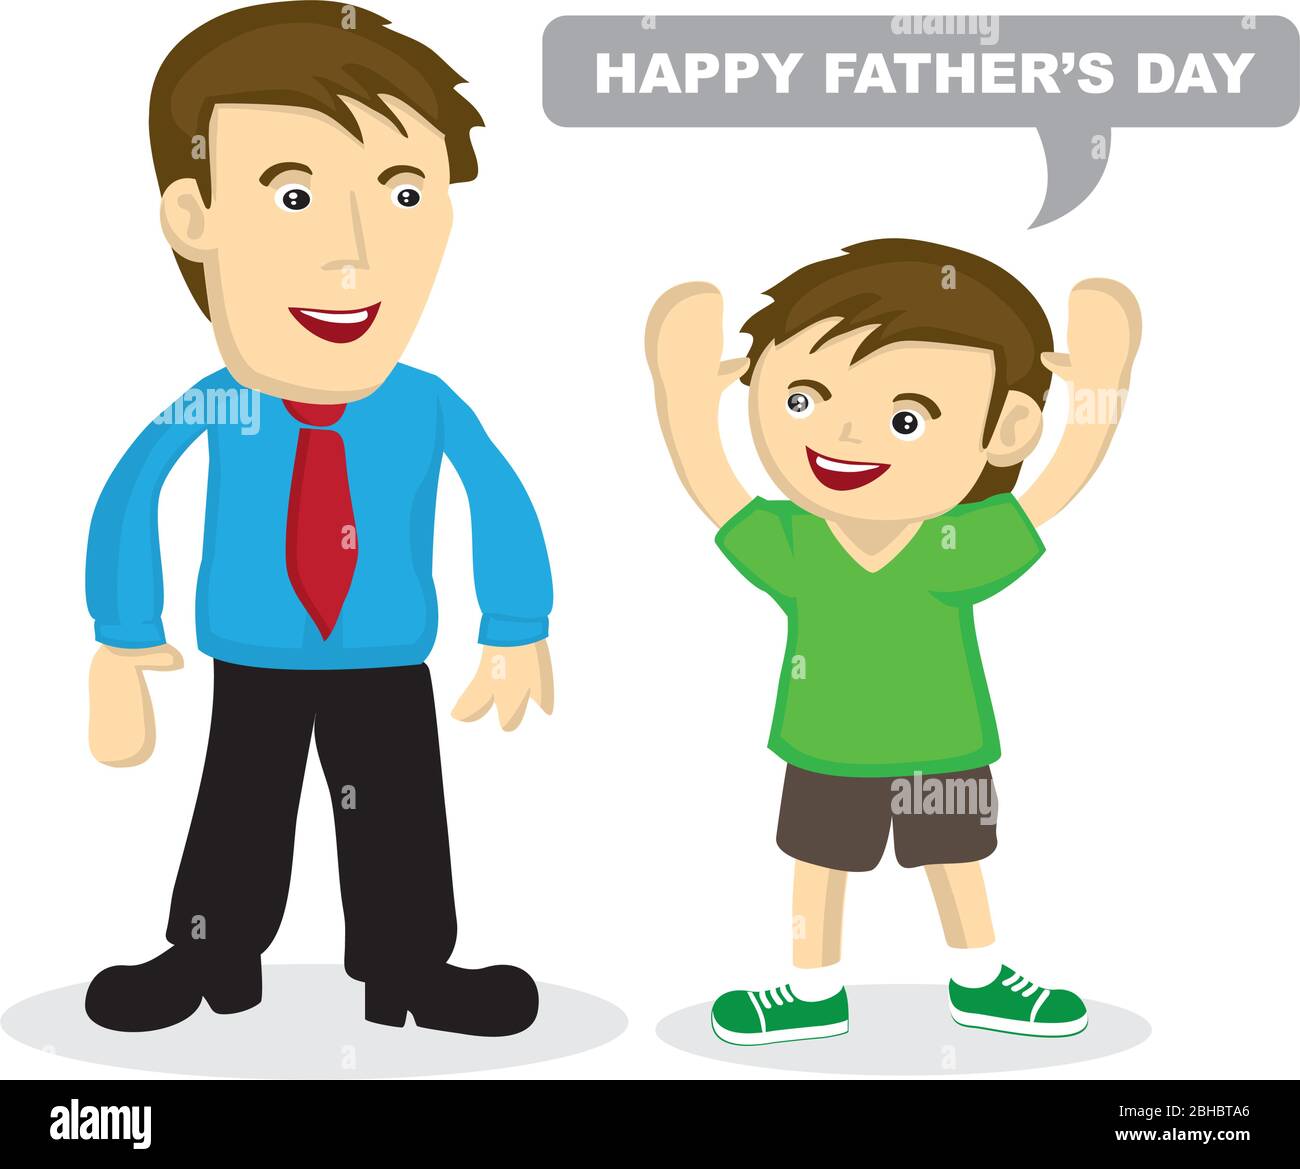 Dibujo de dibujos animados vectoriales de un niño saludando a su padre.  Concepto de vinculación entre el padre y el hijo. Adecuado para la  ilustración del día del padre Imagen Vector de